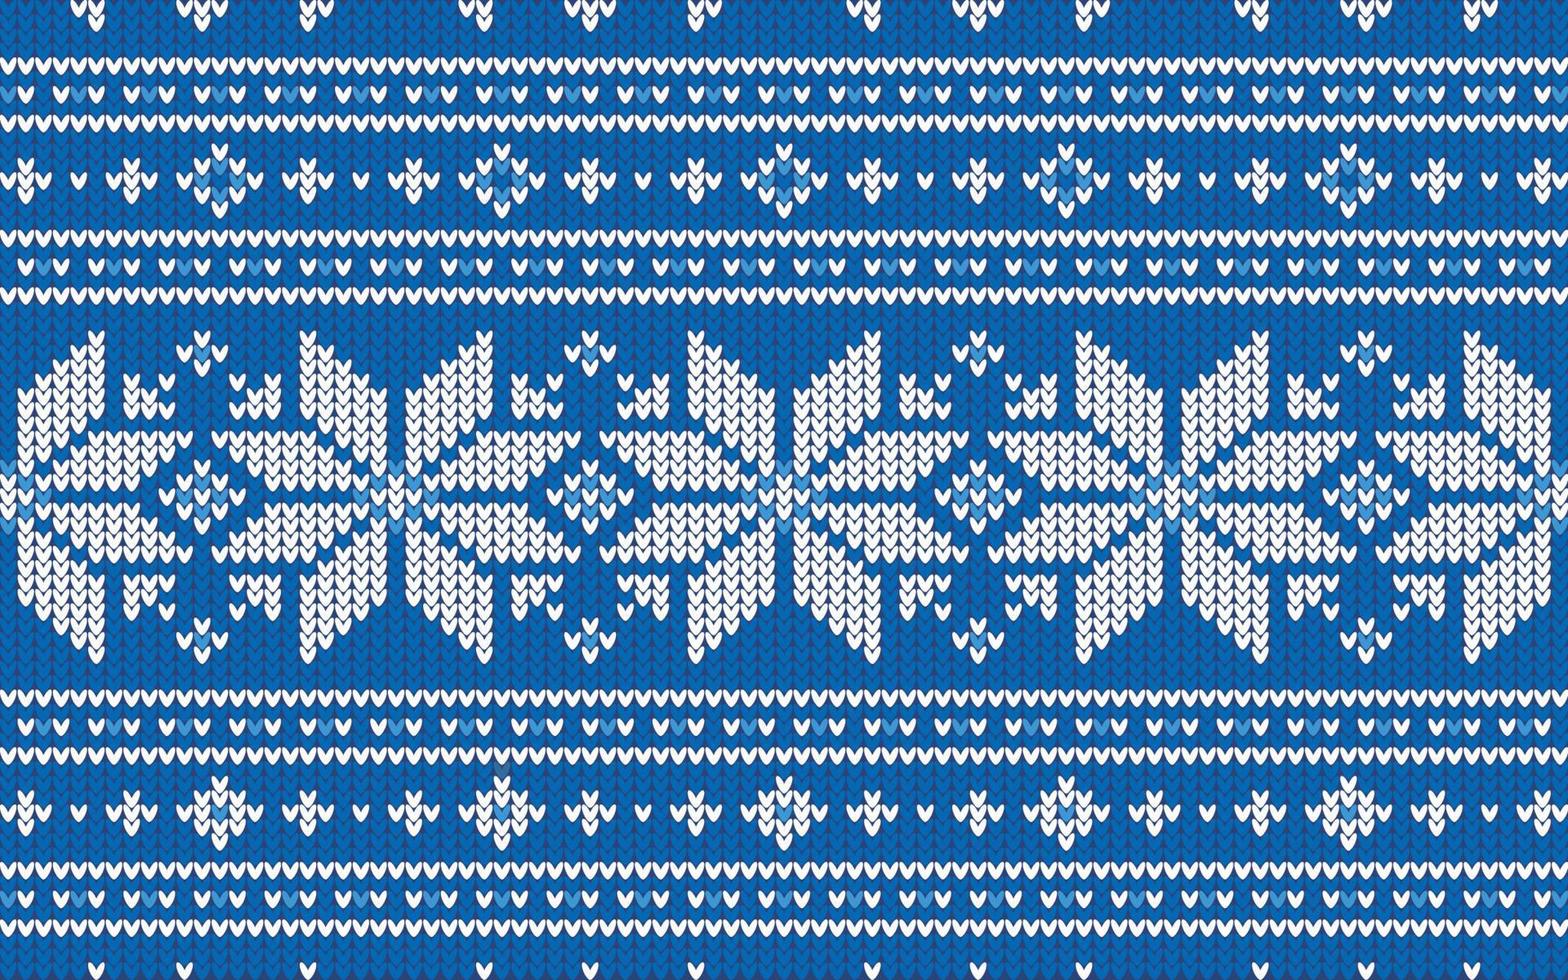 patrón de jacquard navideño con copos de nieve blancos y azules vector